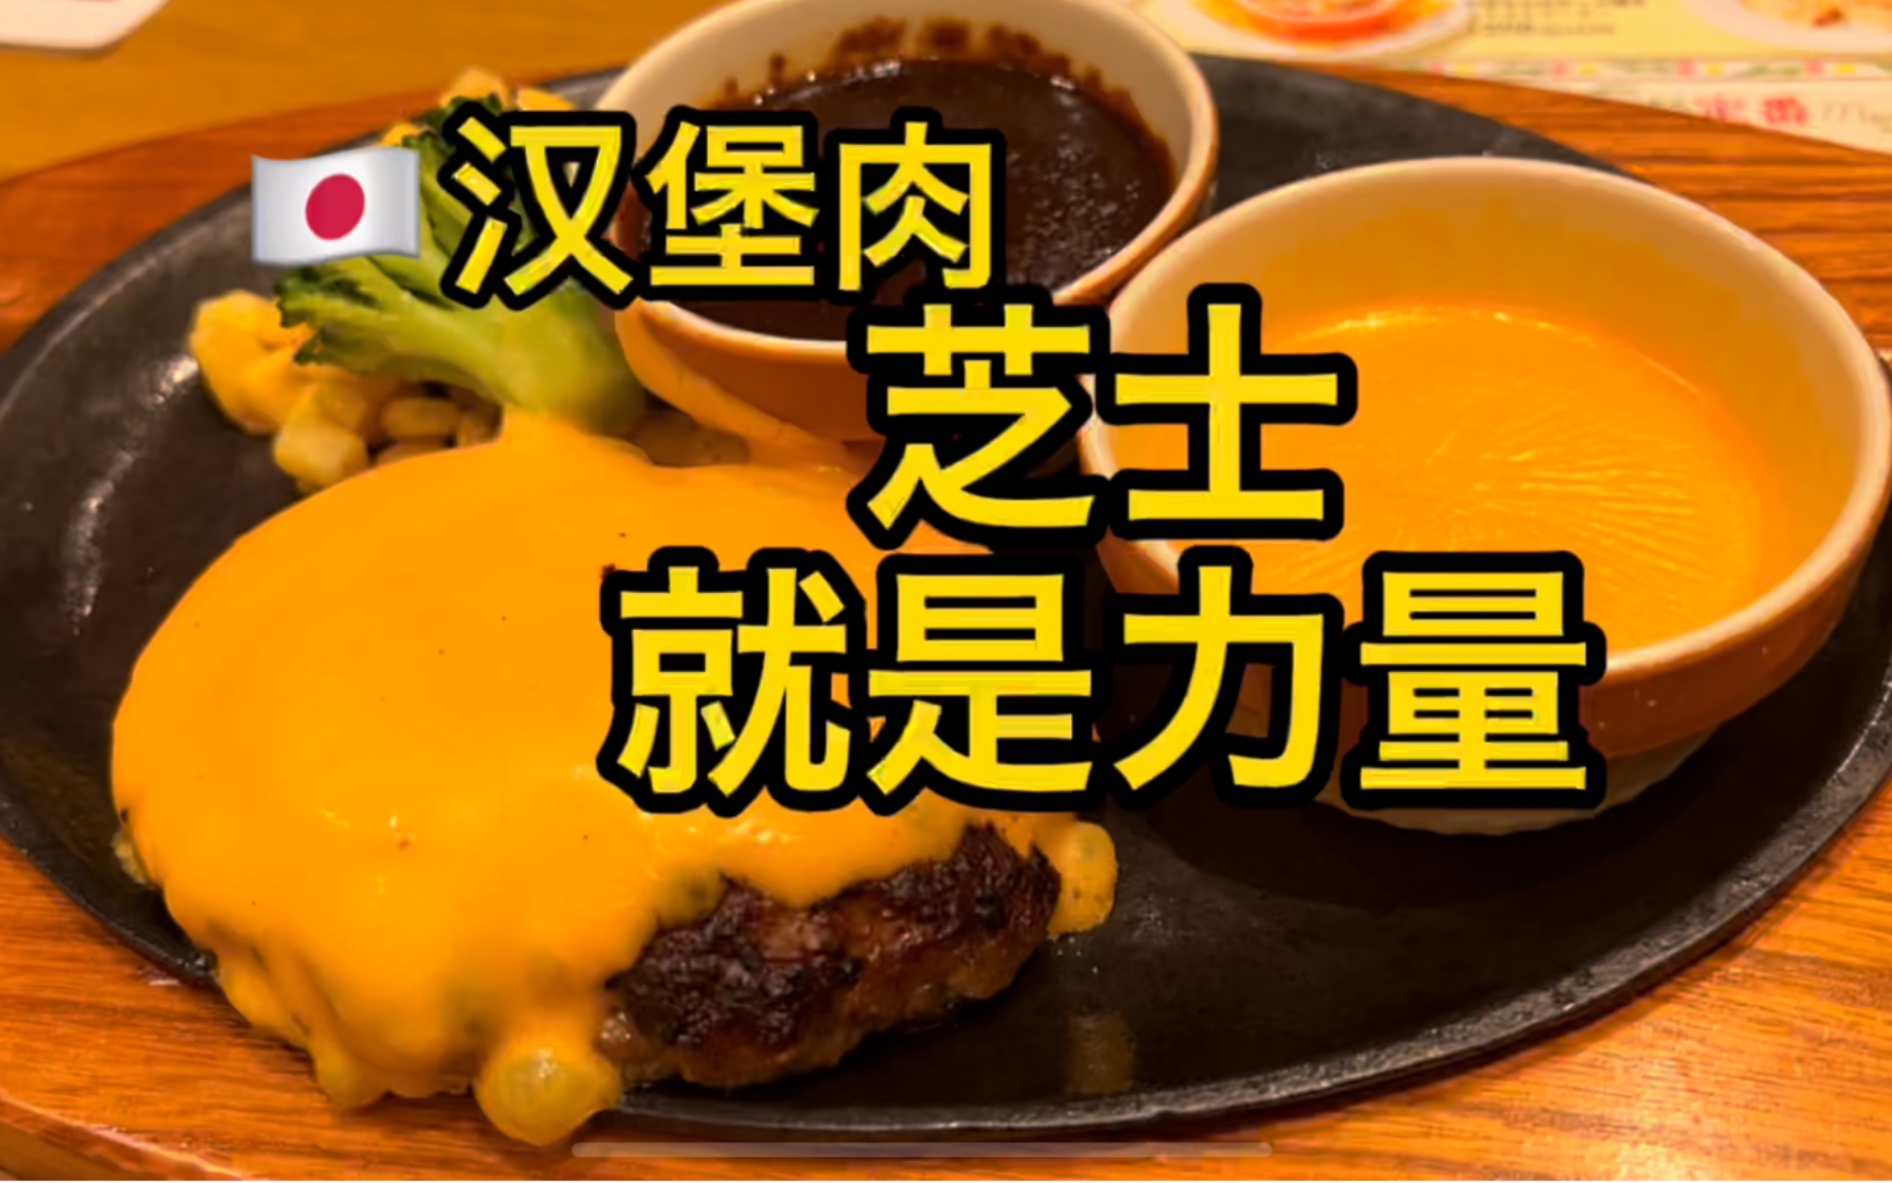 日式汉堡肉 - 哔哩哔哩